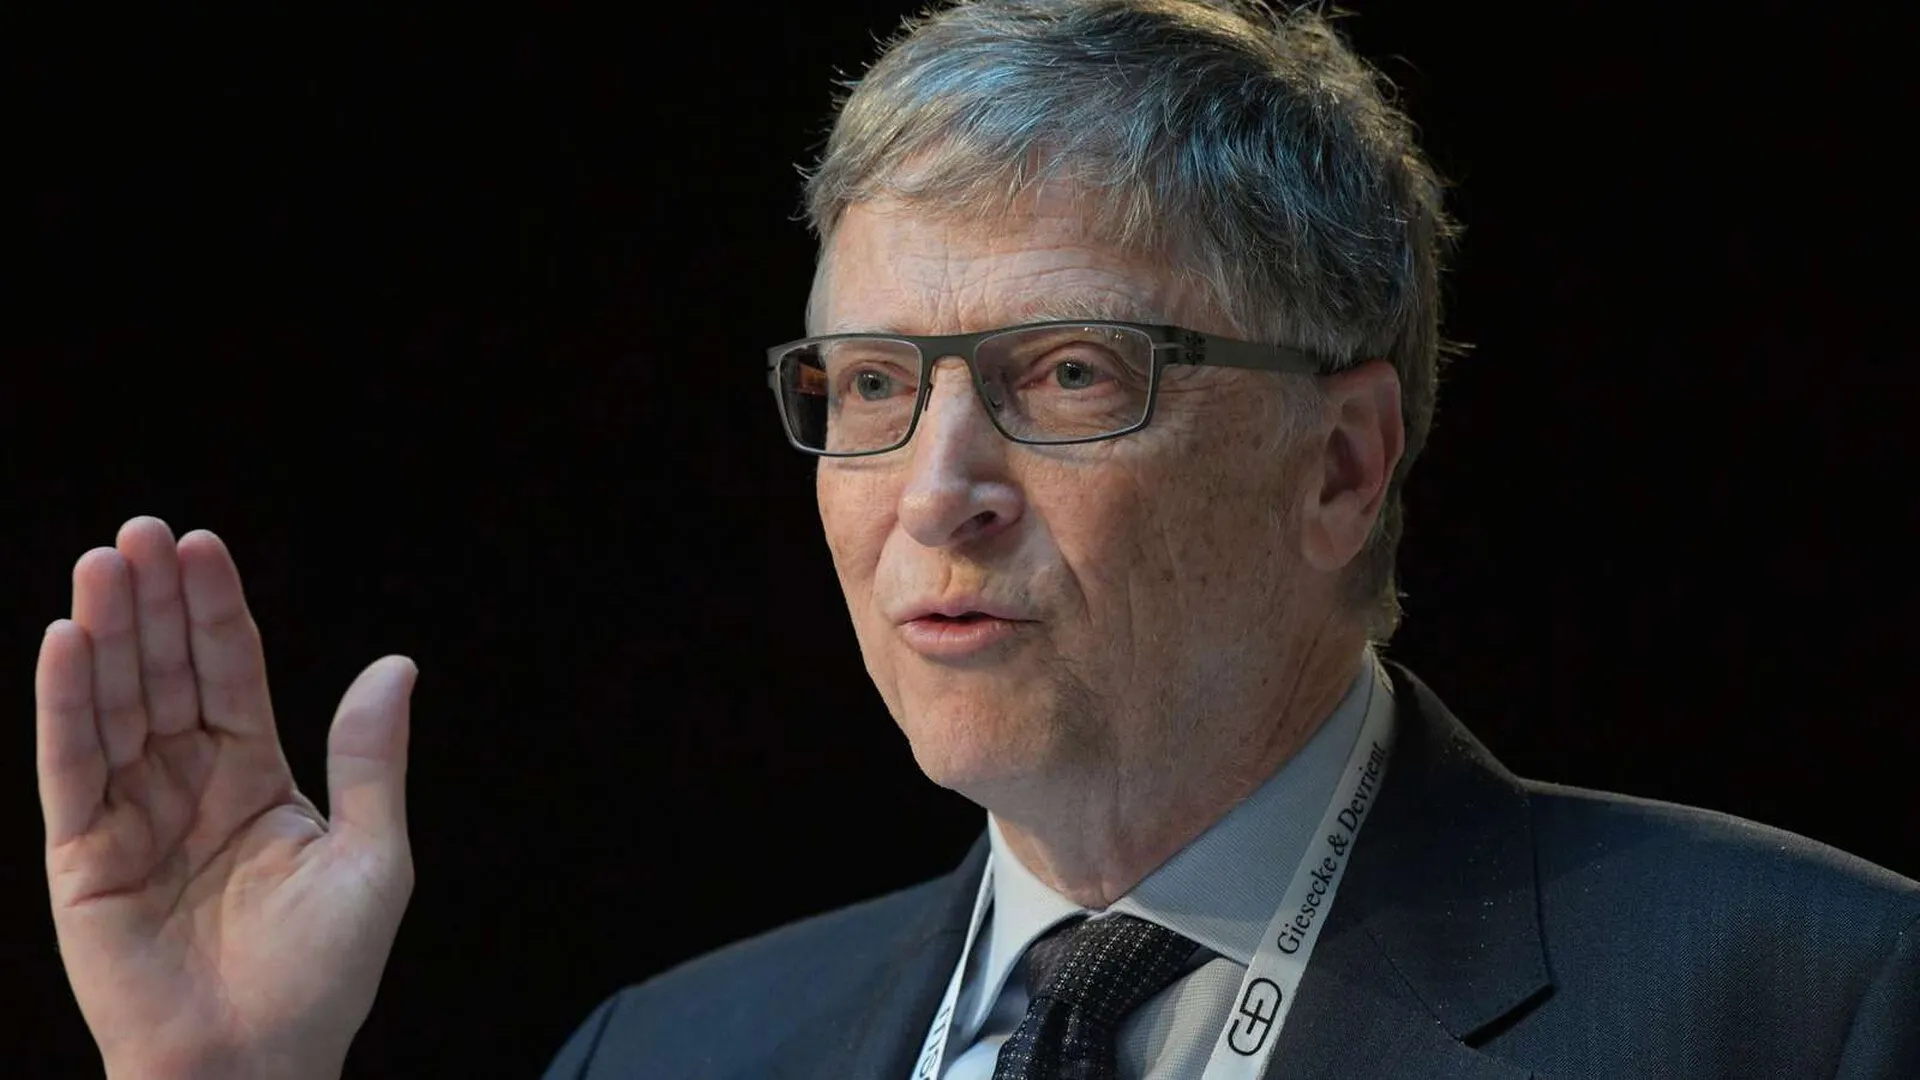 Билл Гейтс заразился коронавирусом